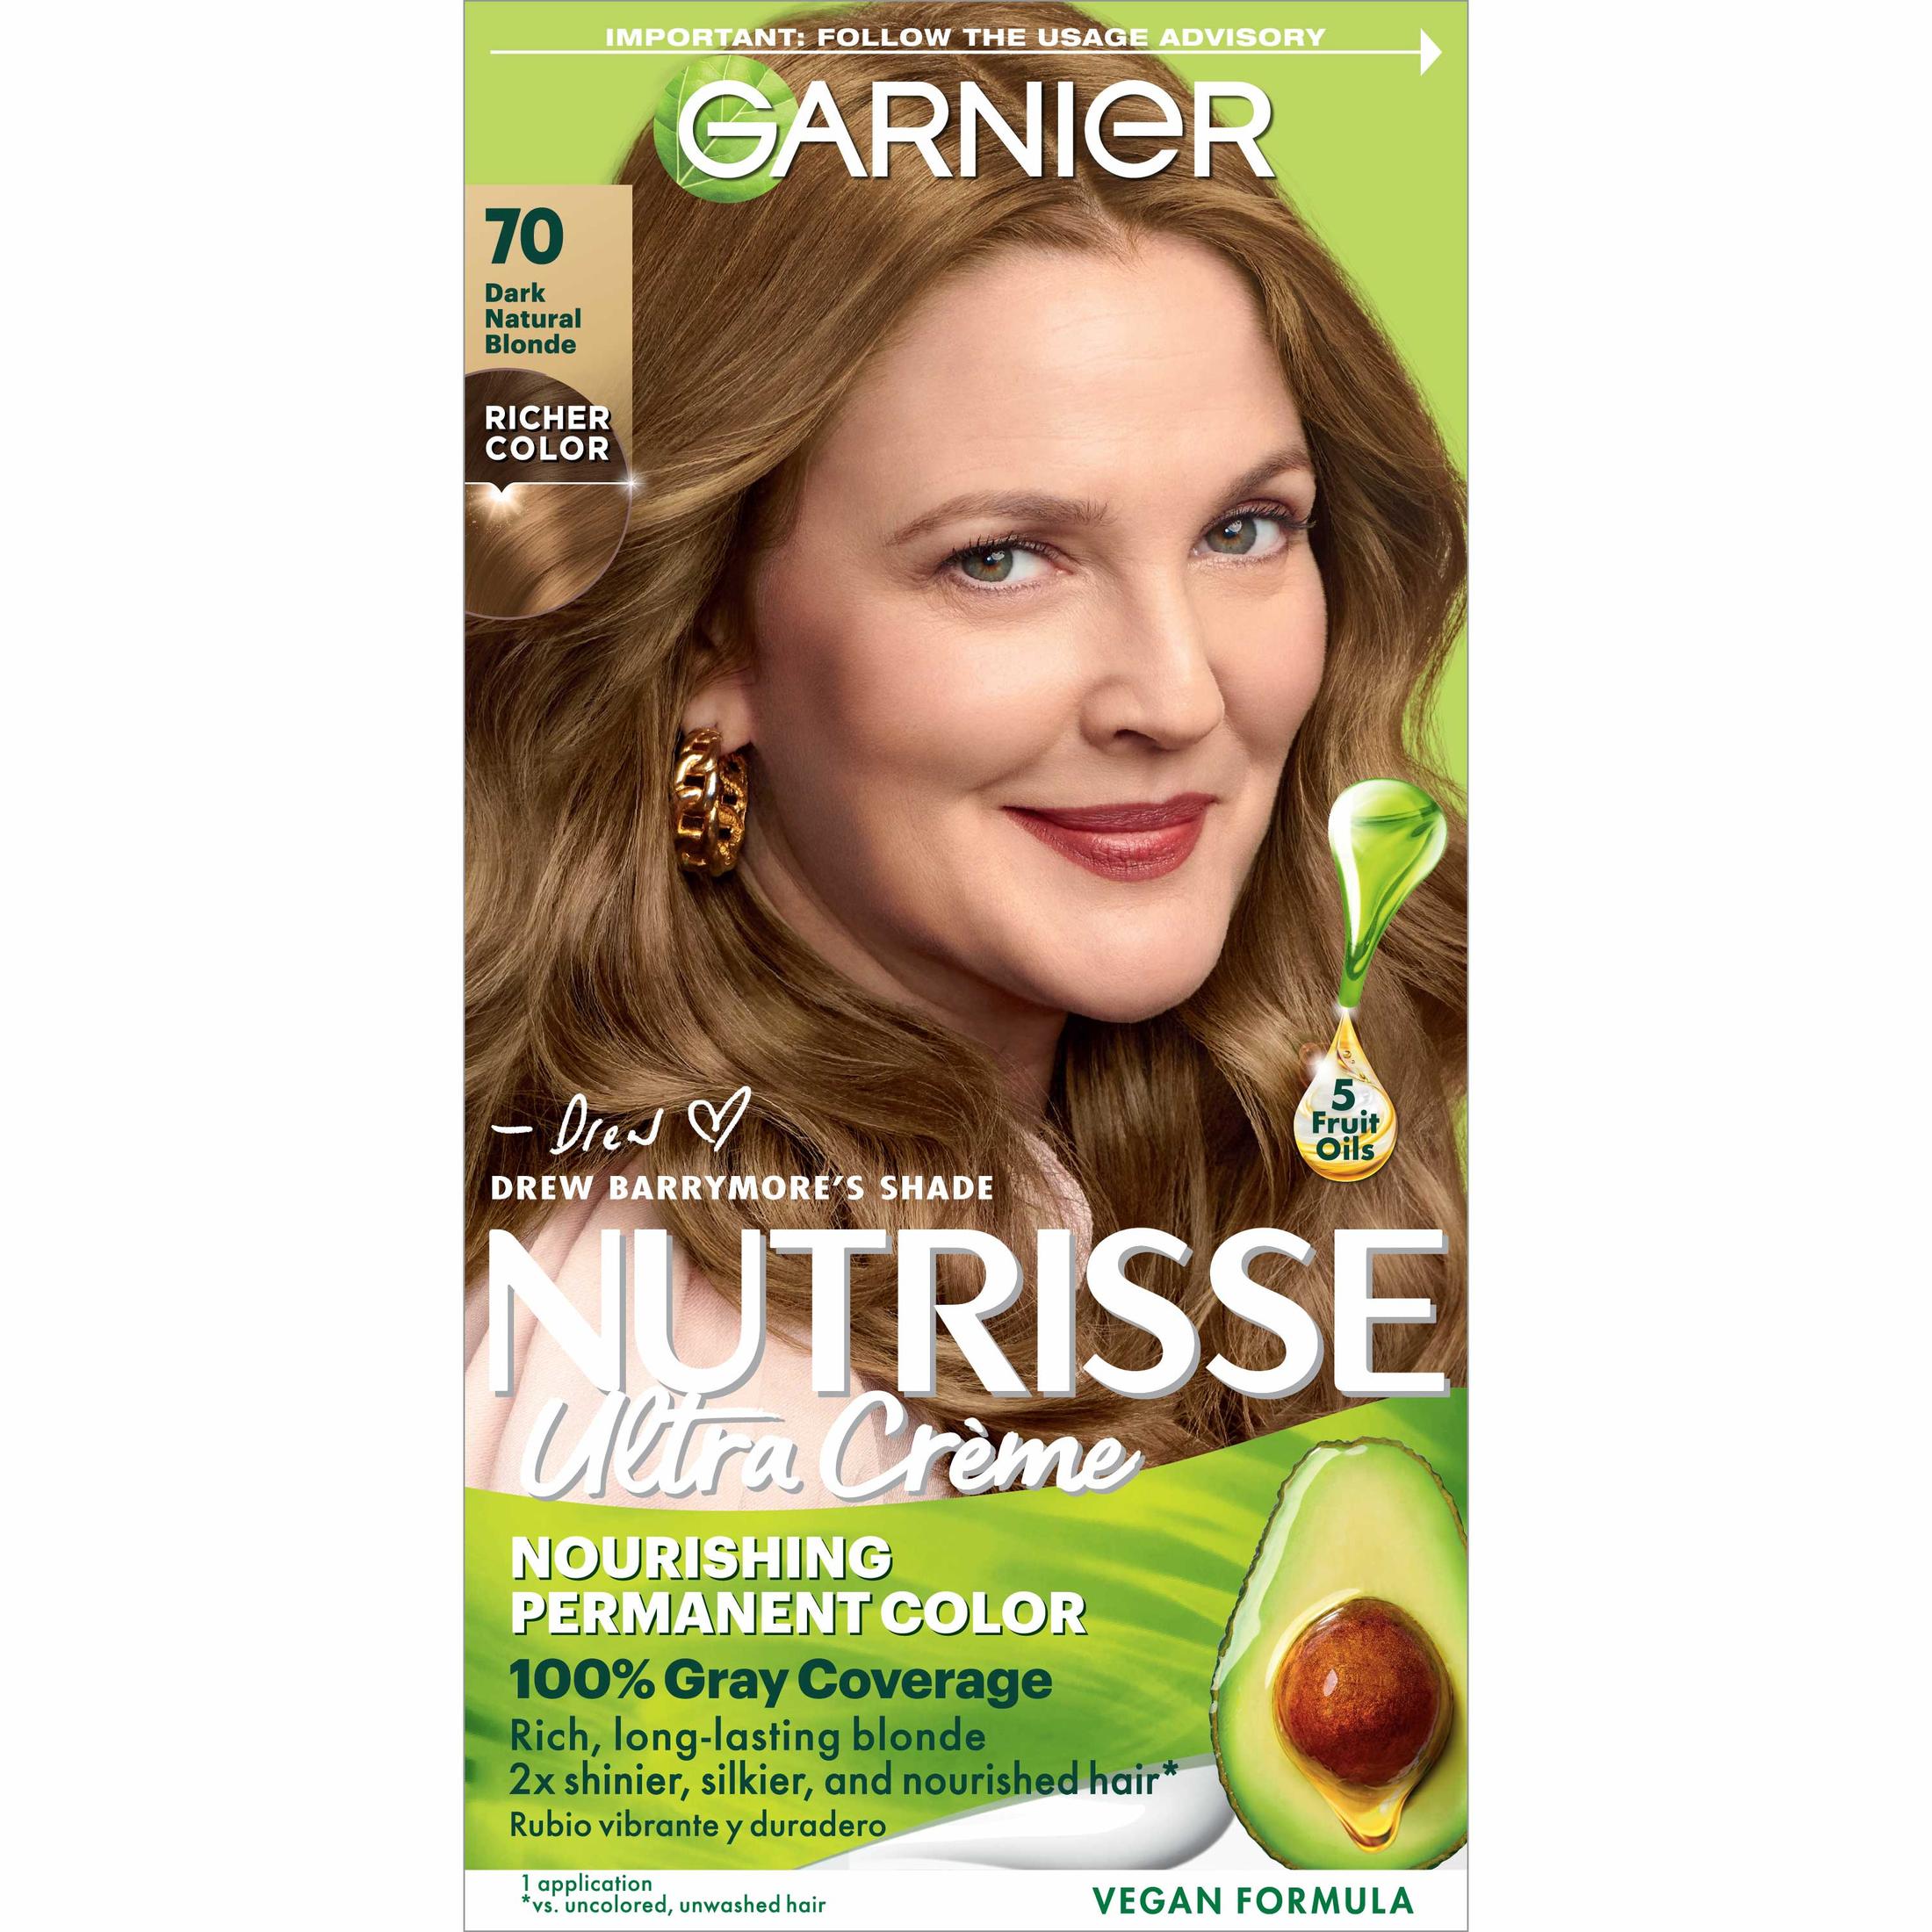 Garnier Nutrisse Nourishing Hair Color Creme, 070 Dark Natural Blonde Almond Creme - image 1 of 10